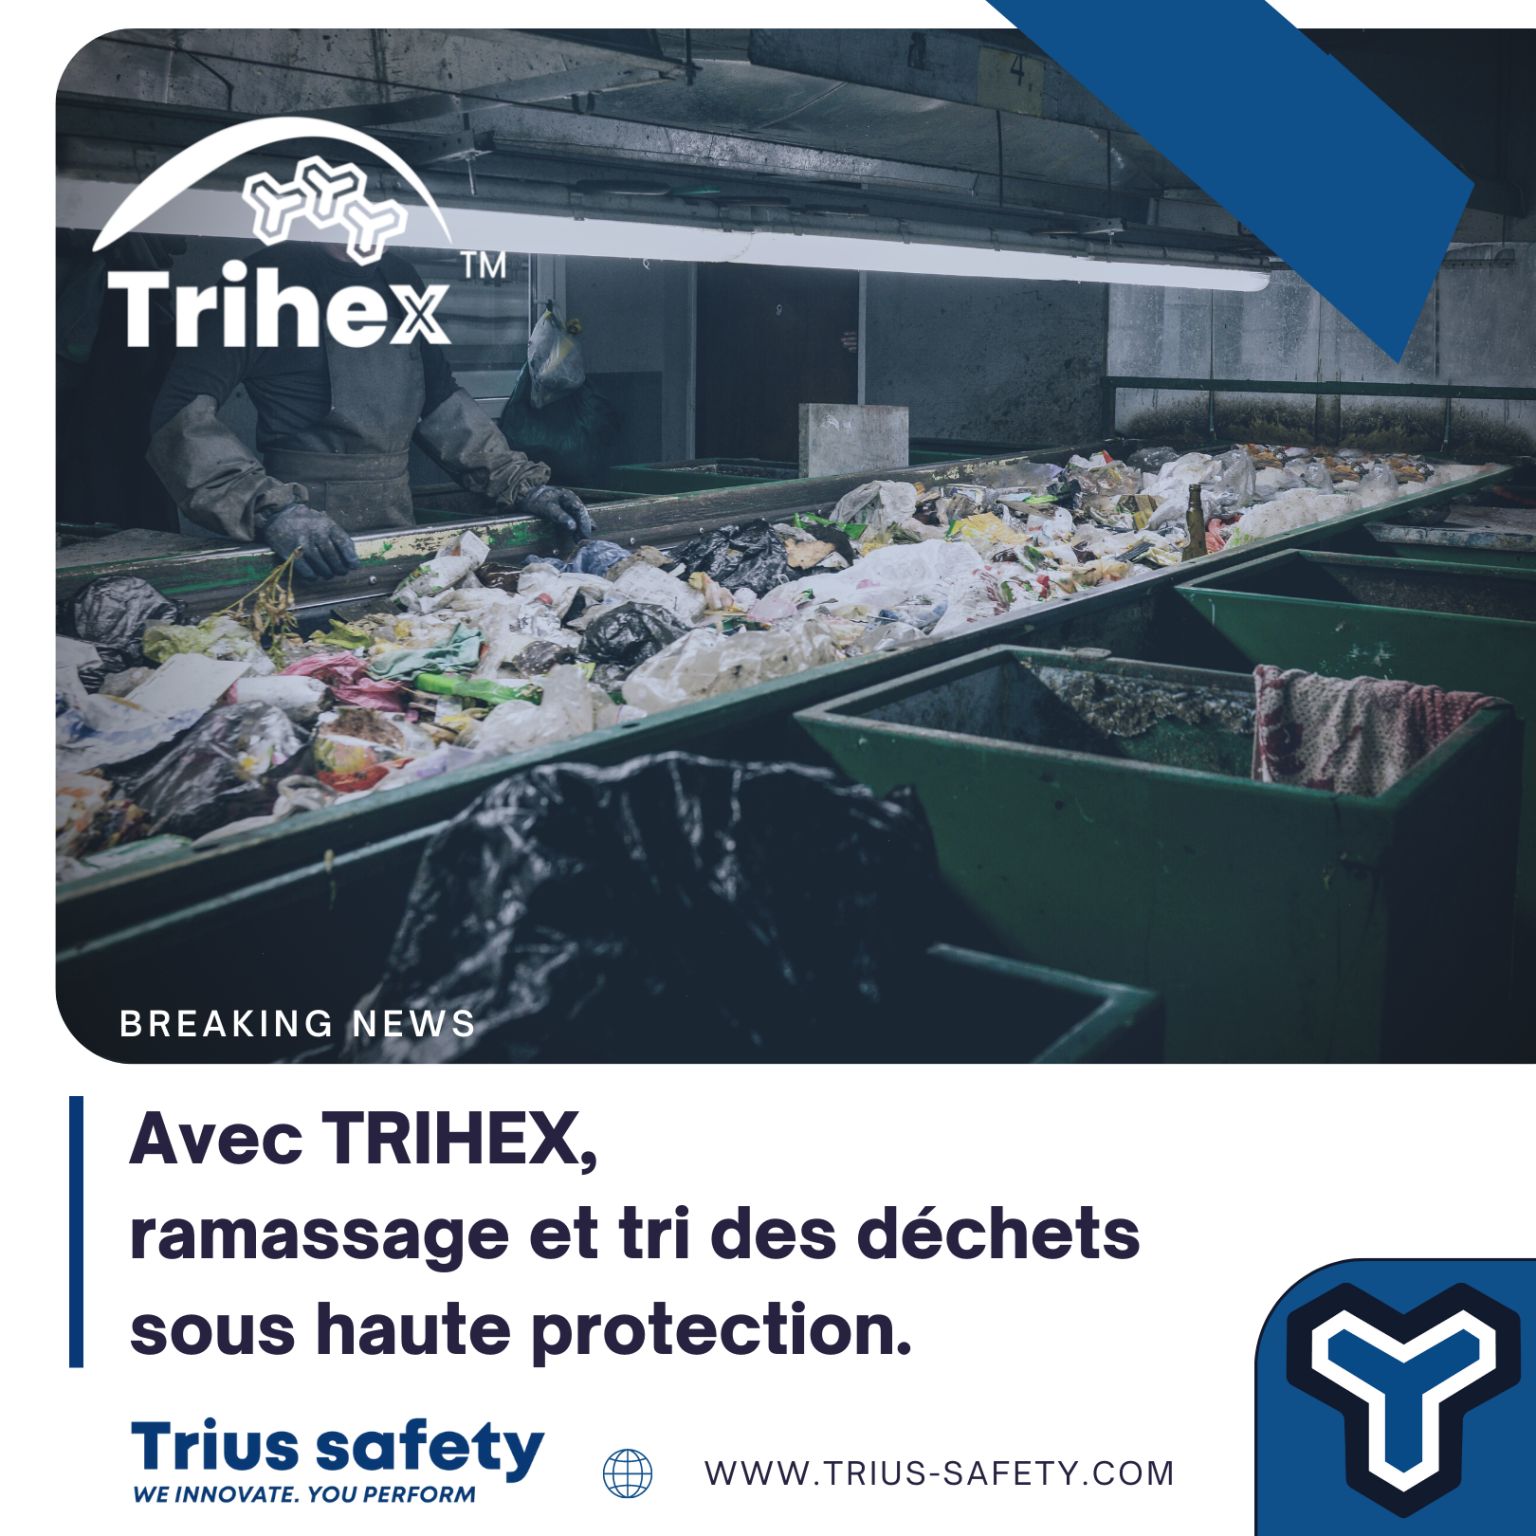 Dites STOP aux risques de perforation avec TRIHEX ! ✋????